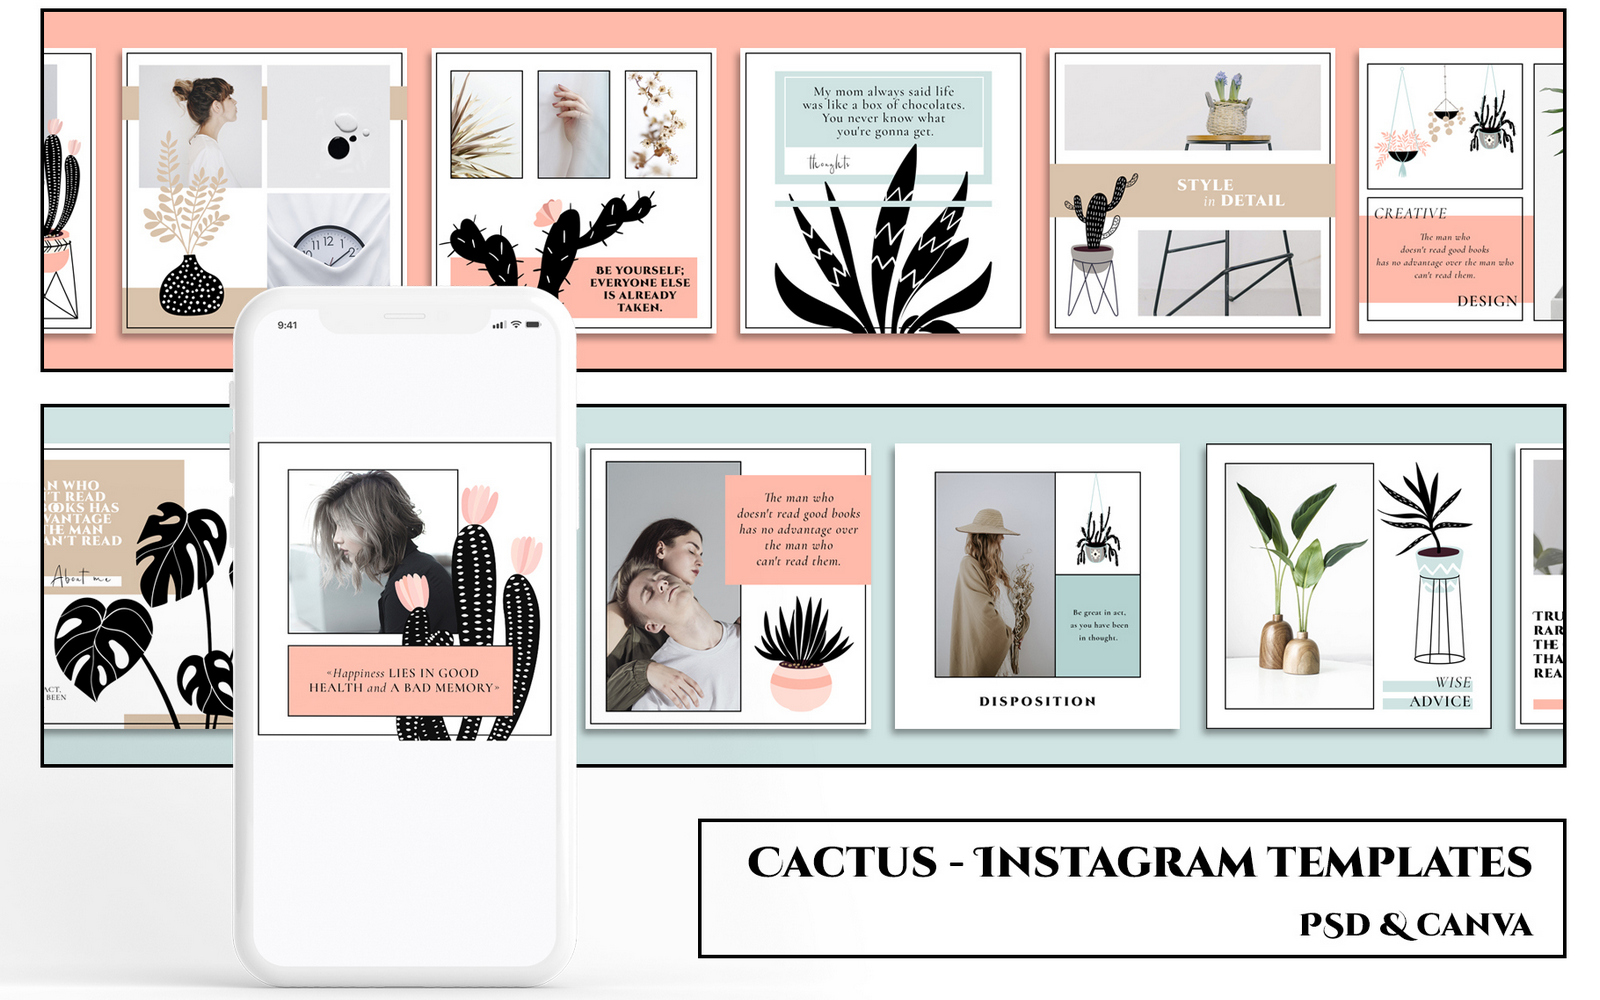 CACTUS - Instagram Templates Social Media